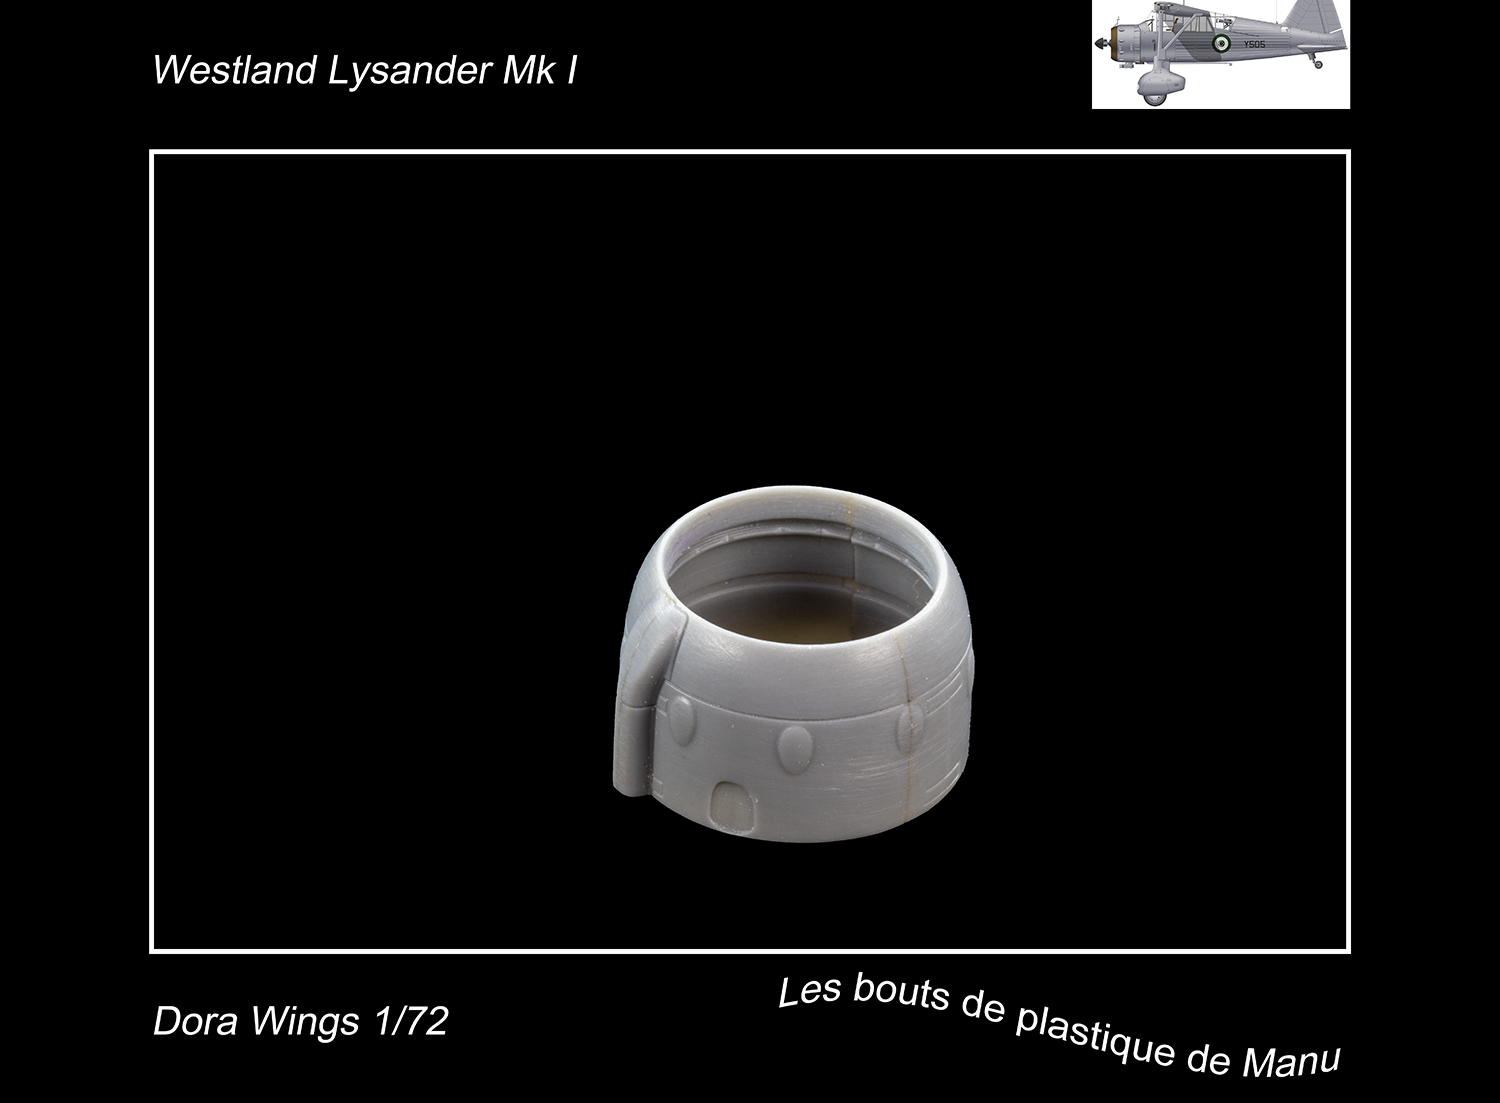 [Dora Wings] Westland Lysander Mk I - Je préfère en rire... 5x23